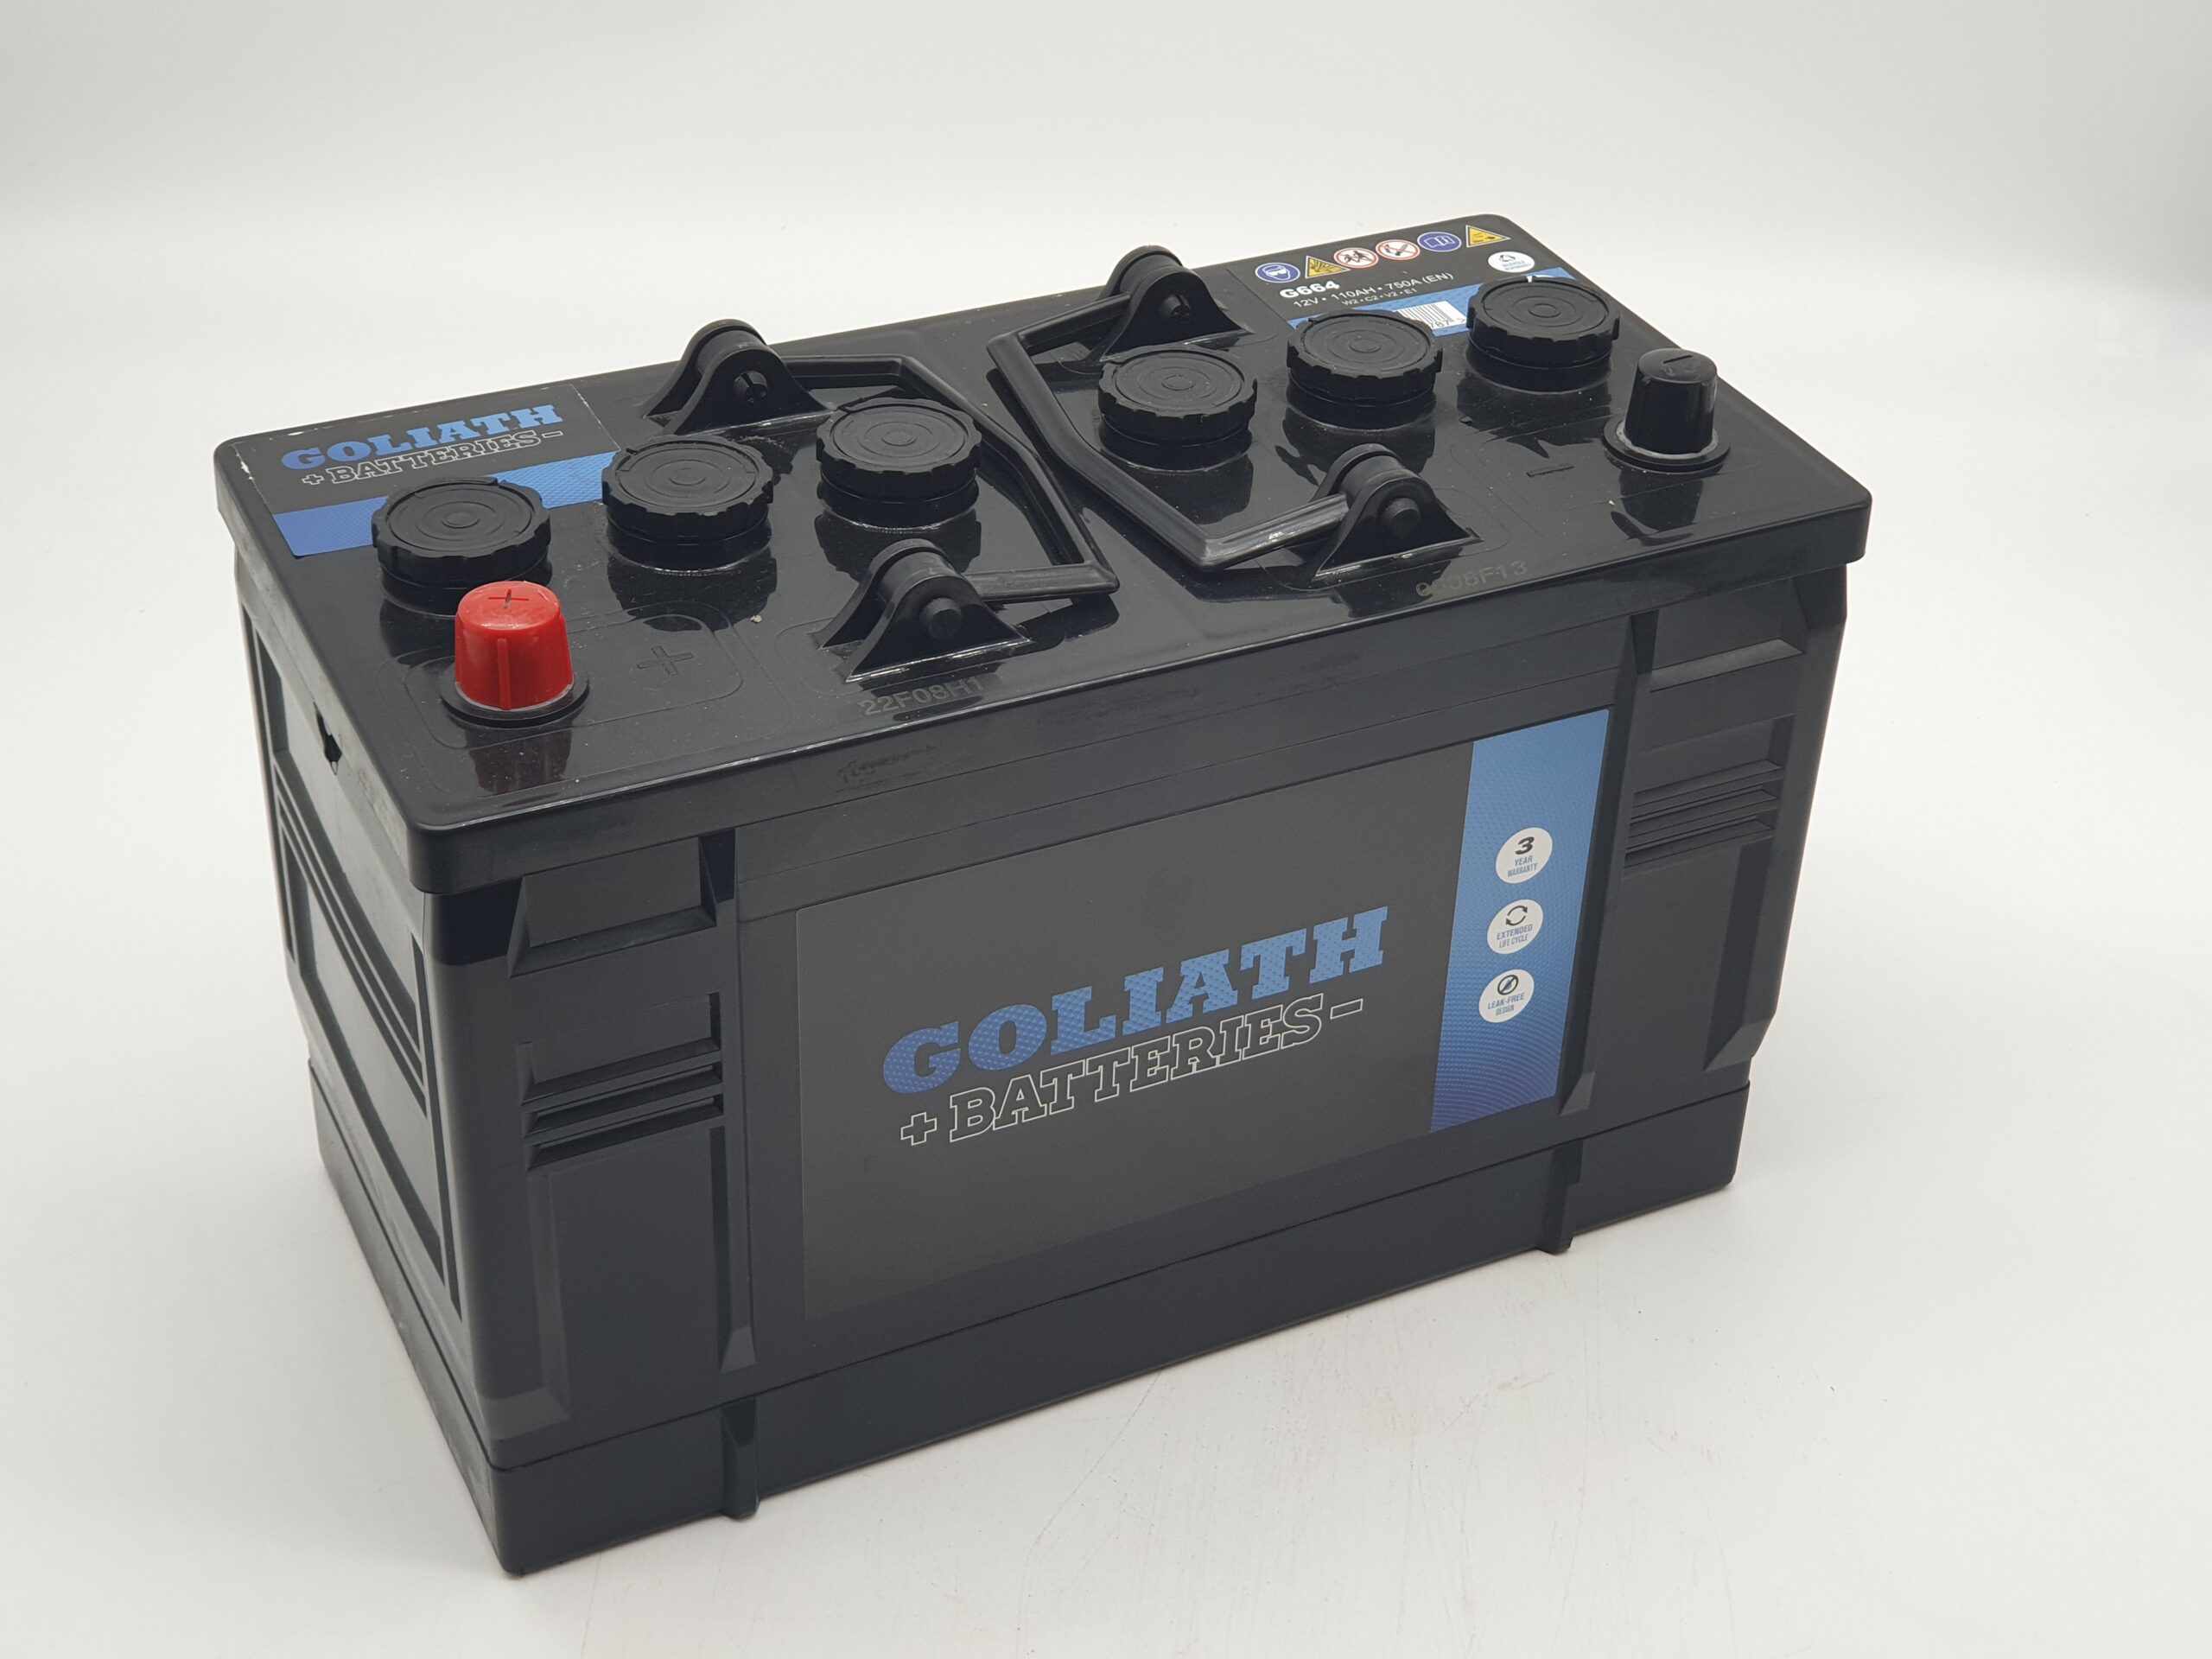 Goliath G664 – 664 110Ah 750A Battery – 3 Year Warranty